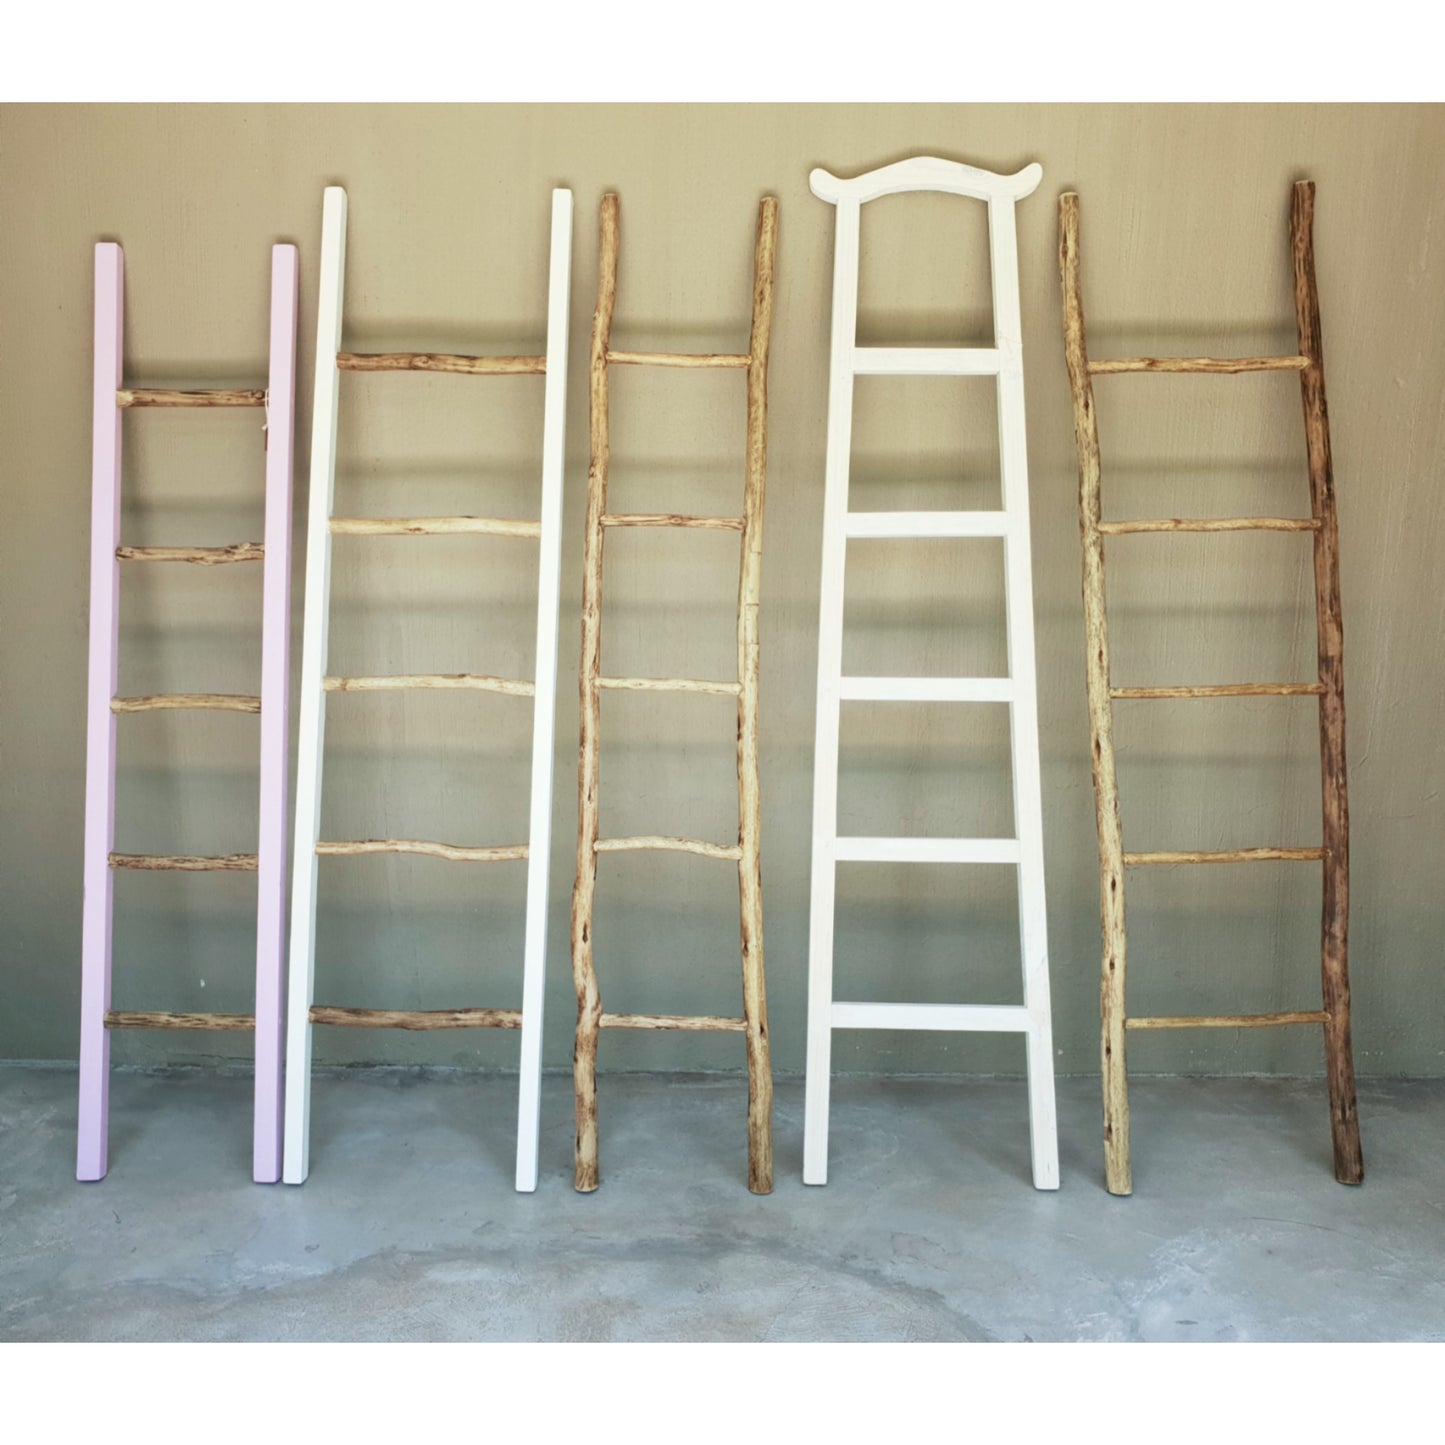 Asian Decor Ladder - Decor